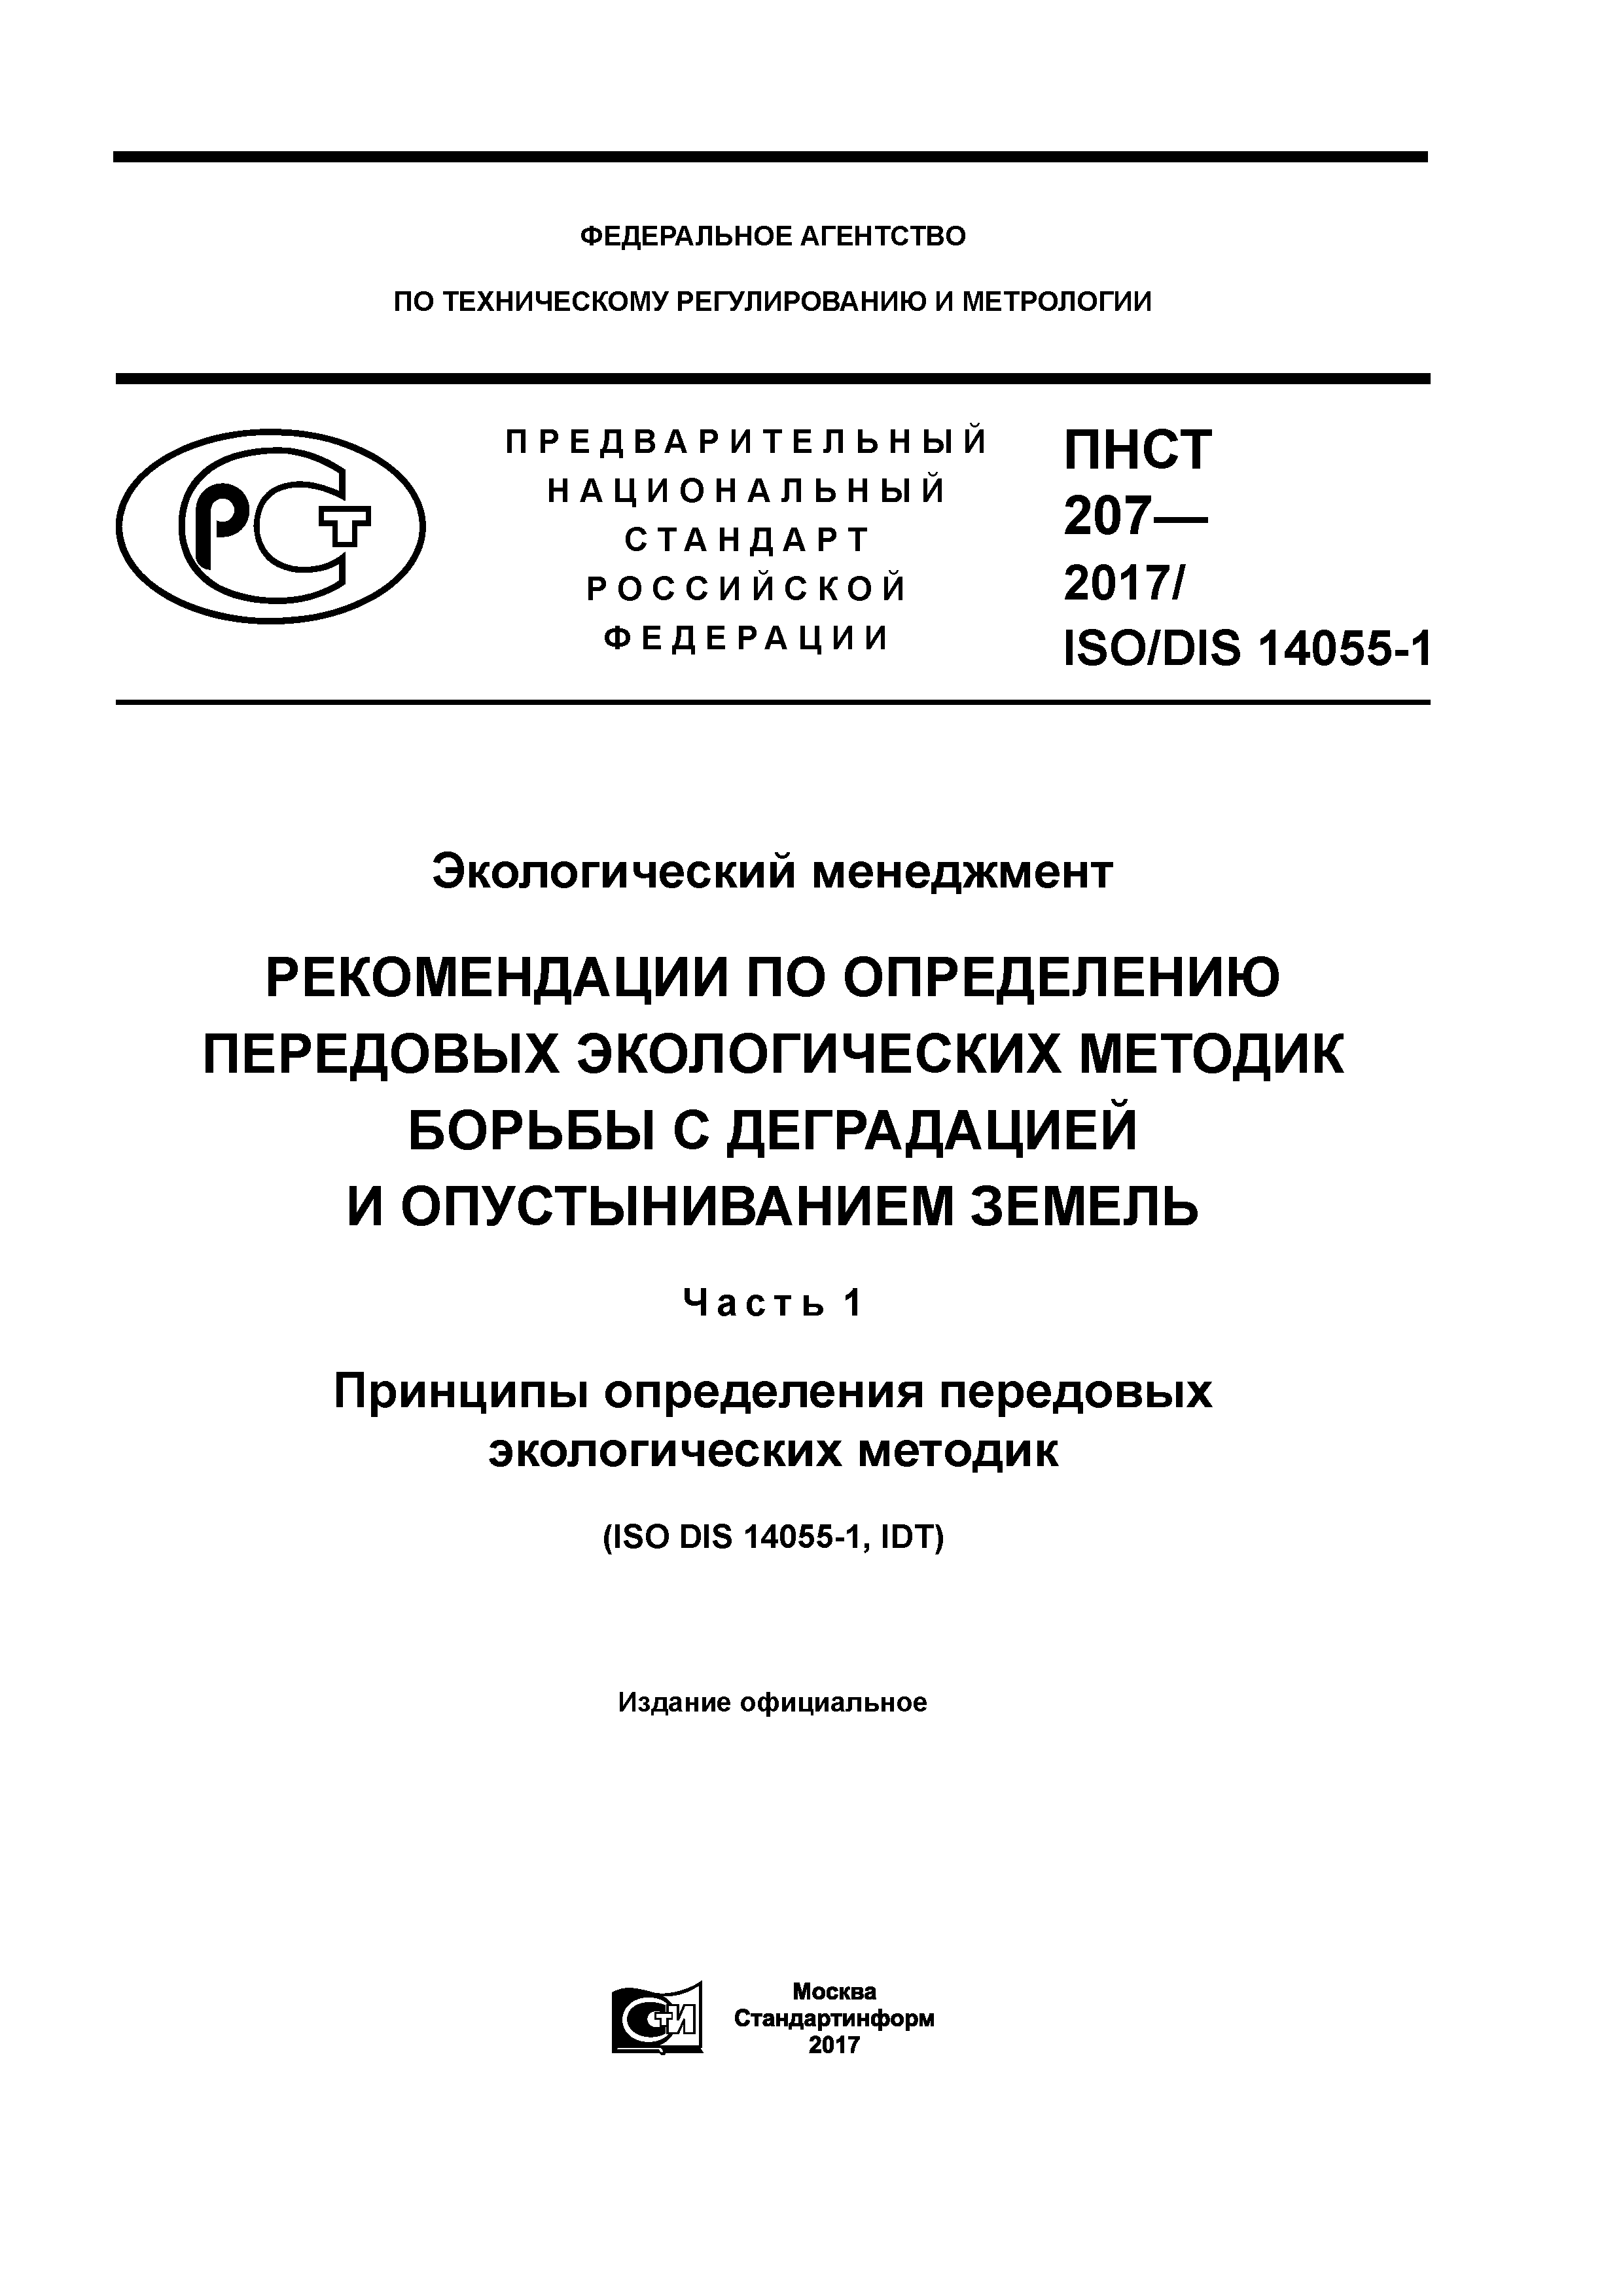 ПНСТ 207-2017